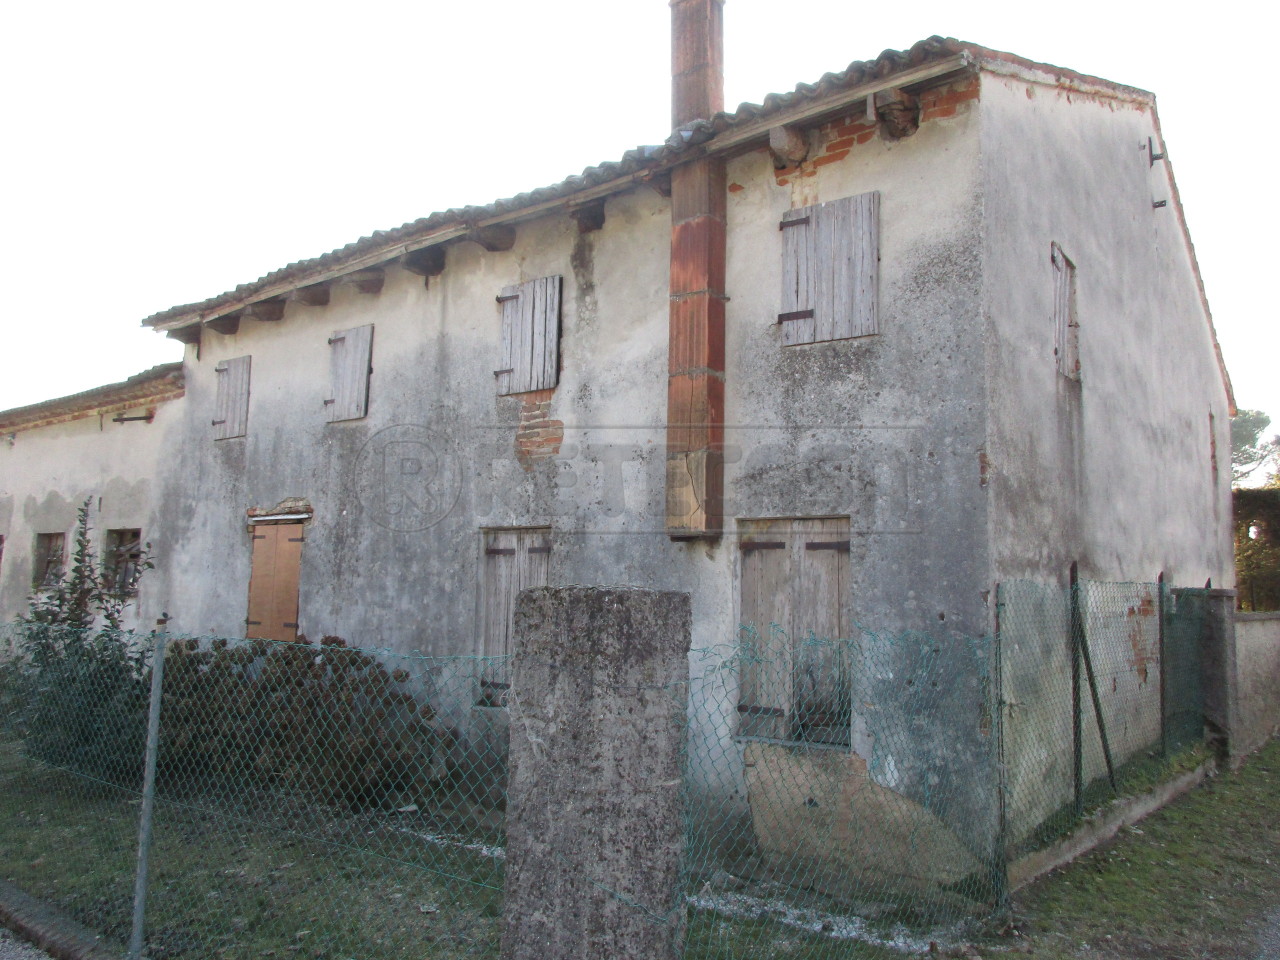 Rustico / Casale in vendita a Camposampiero, 1 locali, prezzo € 95.000 | PortaleAgenzieImmobiliari.it